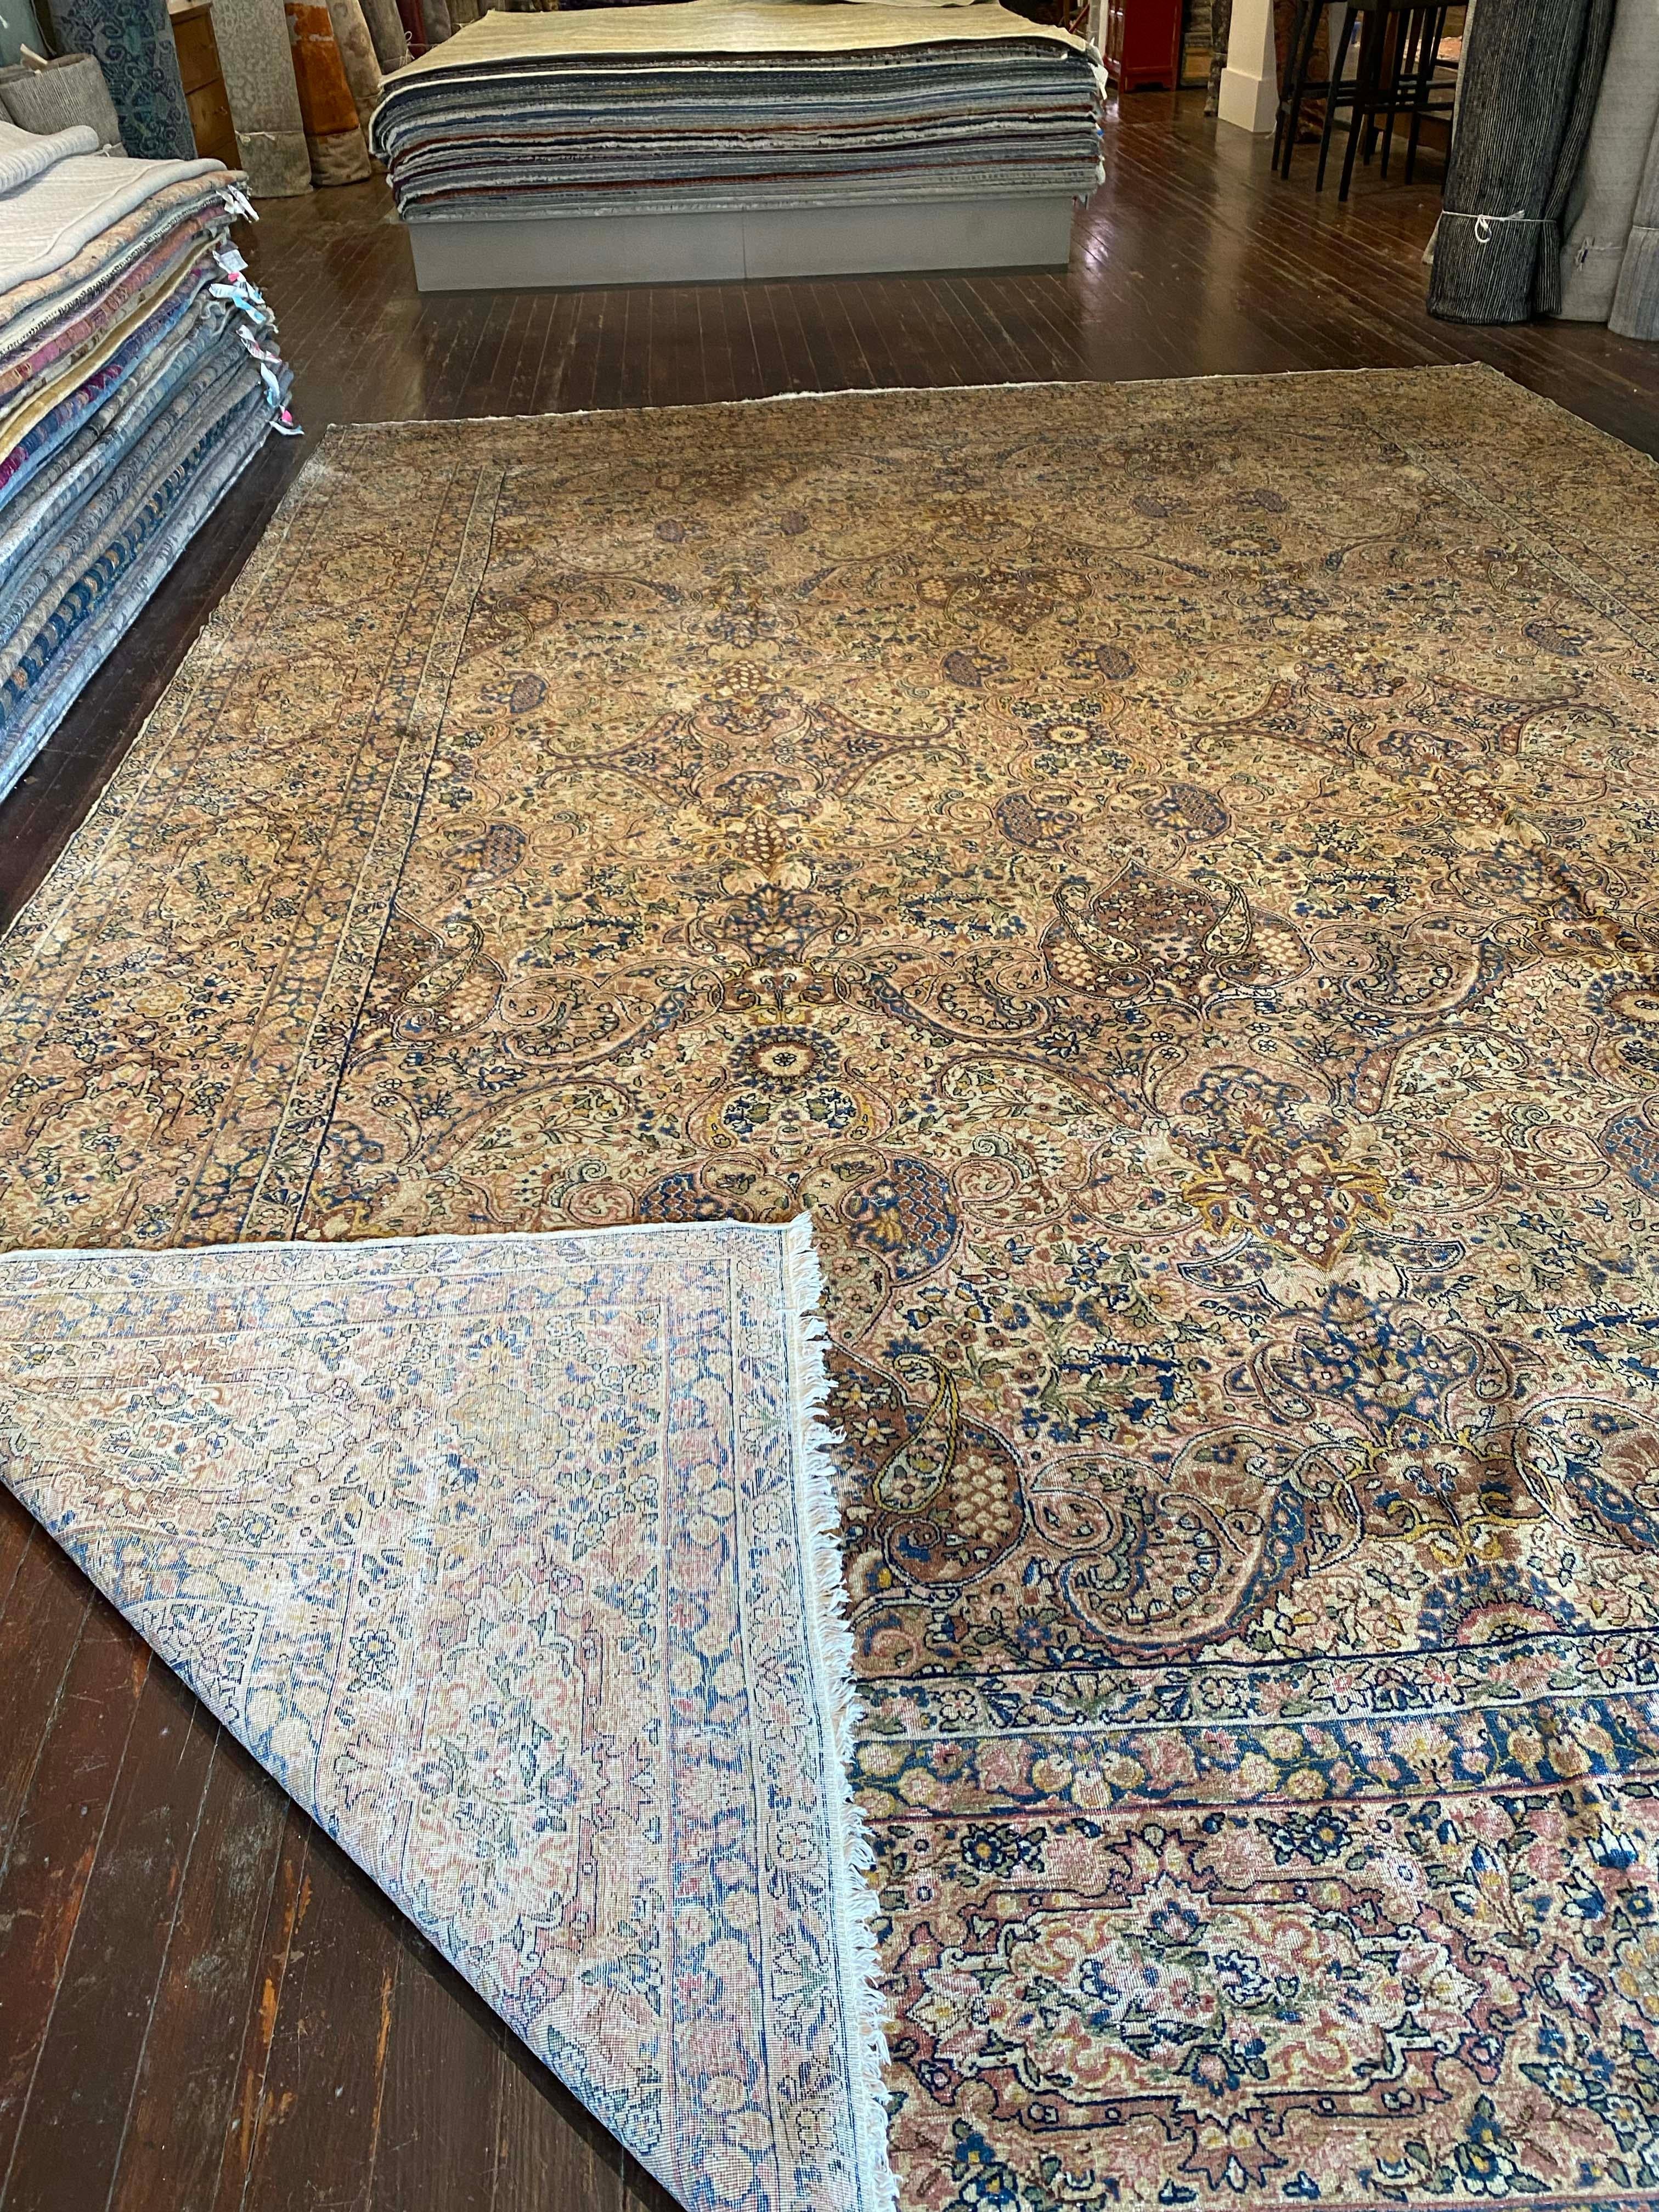 Vintage Kerman-Teppich aus dem Iran. Hundert Prozent Wolle, mit pflanzlichen und pflanzlichen Farbstoffen. Dieses persische Juwel zeigt ein ausgeprägtes, durchgehendes All-Over-Muster,
schön gealtert.

